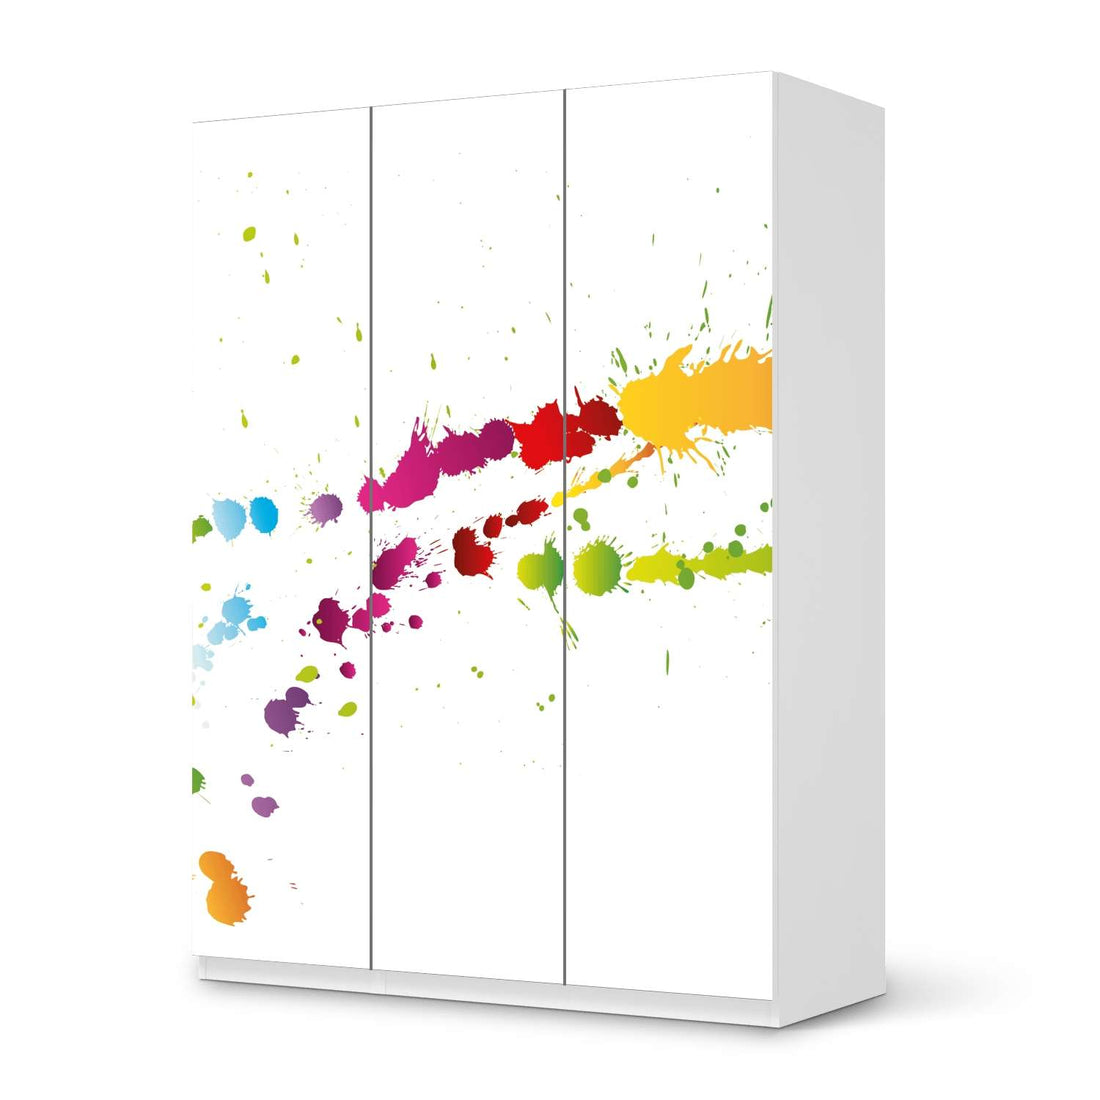 Folie für Möbel Splash 2 - IKEA Pax Schrank 201 cm Höhe - 3 Türen - weiss